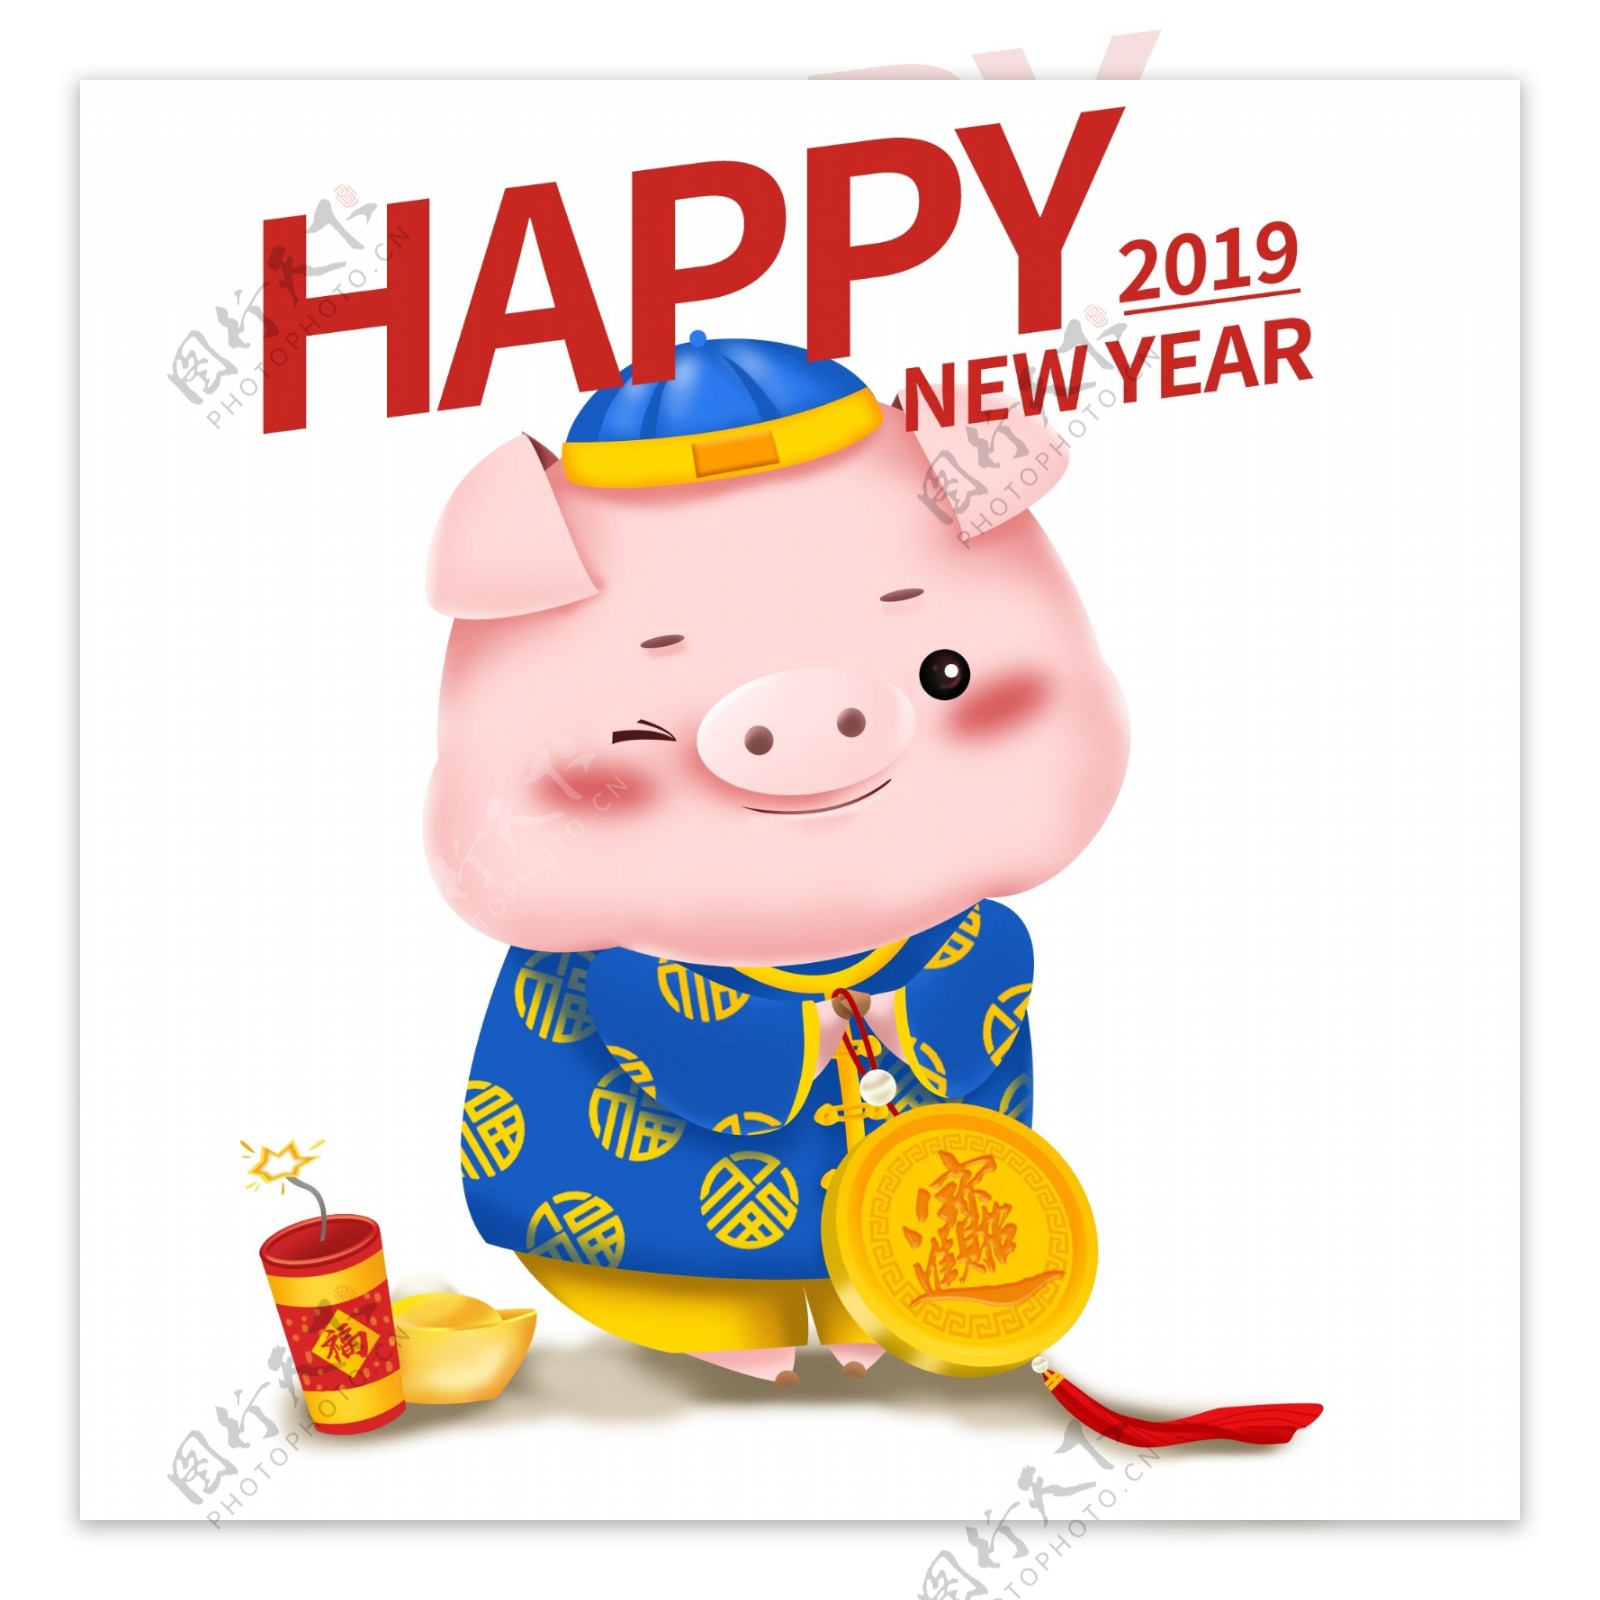 新年可爱猪立体IP卡通形象福娃男孩拜年